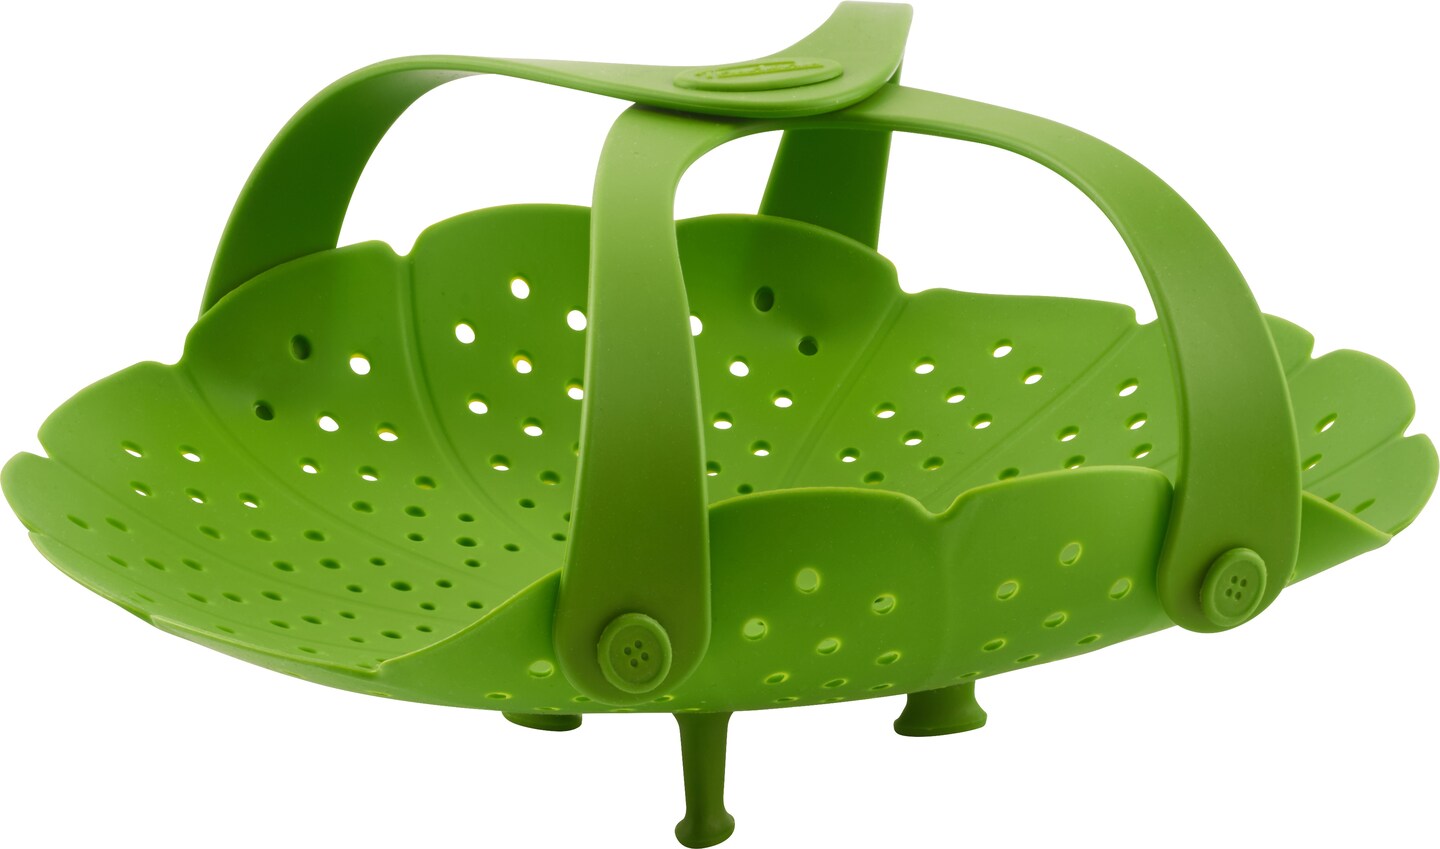 Silicone Vegetable Steamer Basket